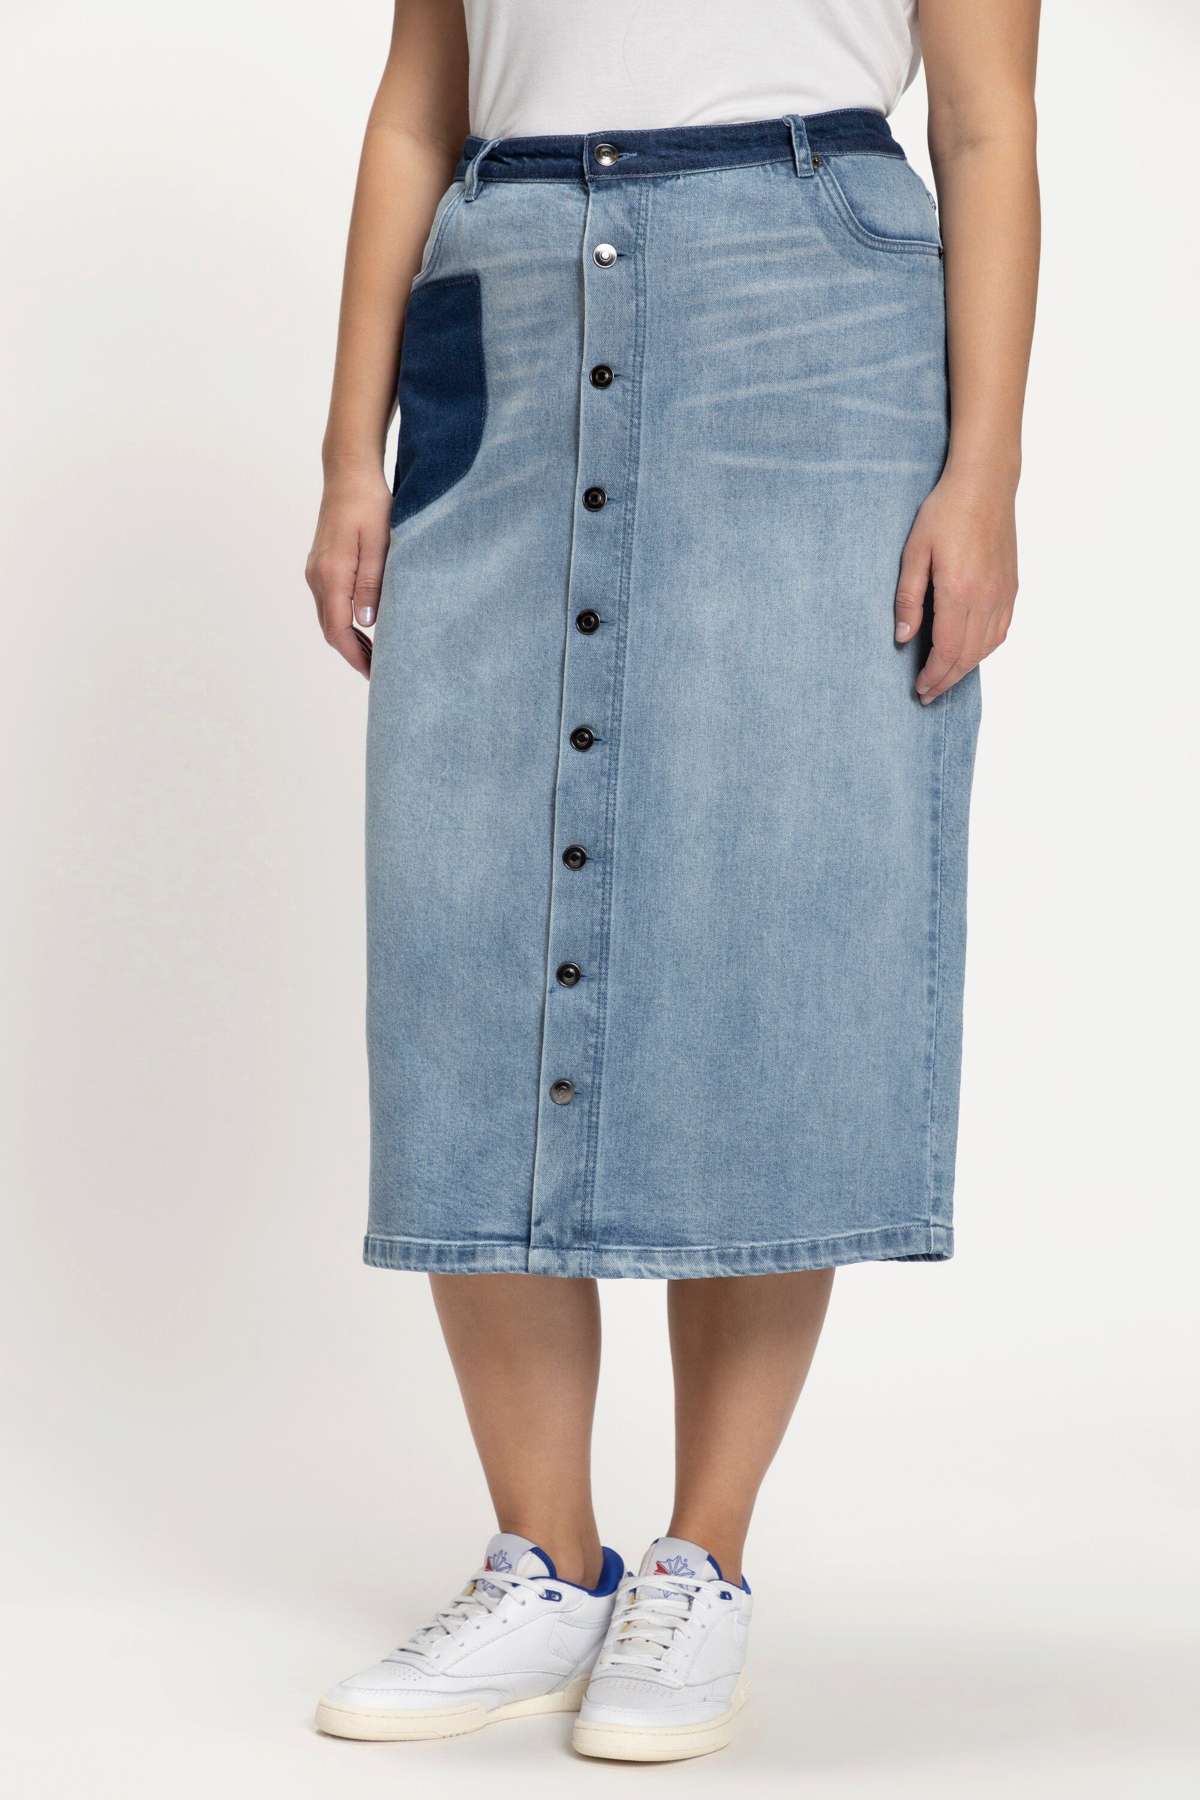 Джинсовая юбка Джинсовая юбка, планка на пуговицах, шлевки для ремня А-силуэта